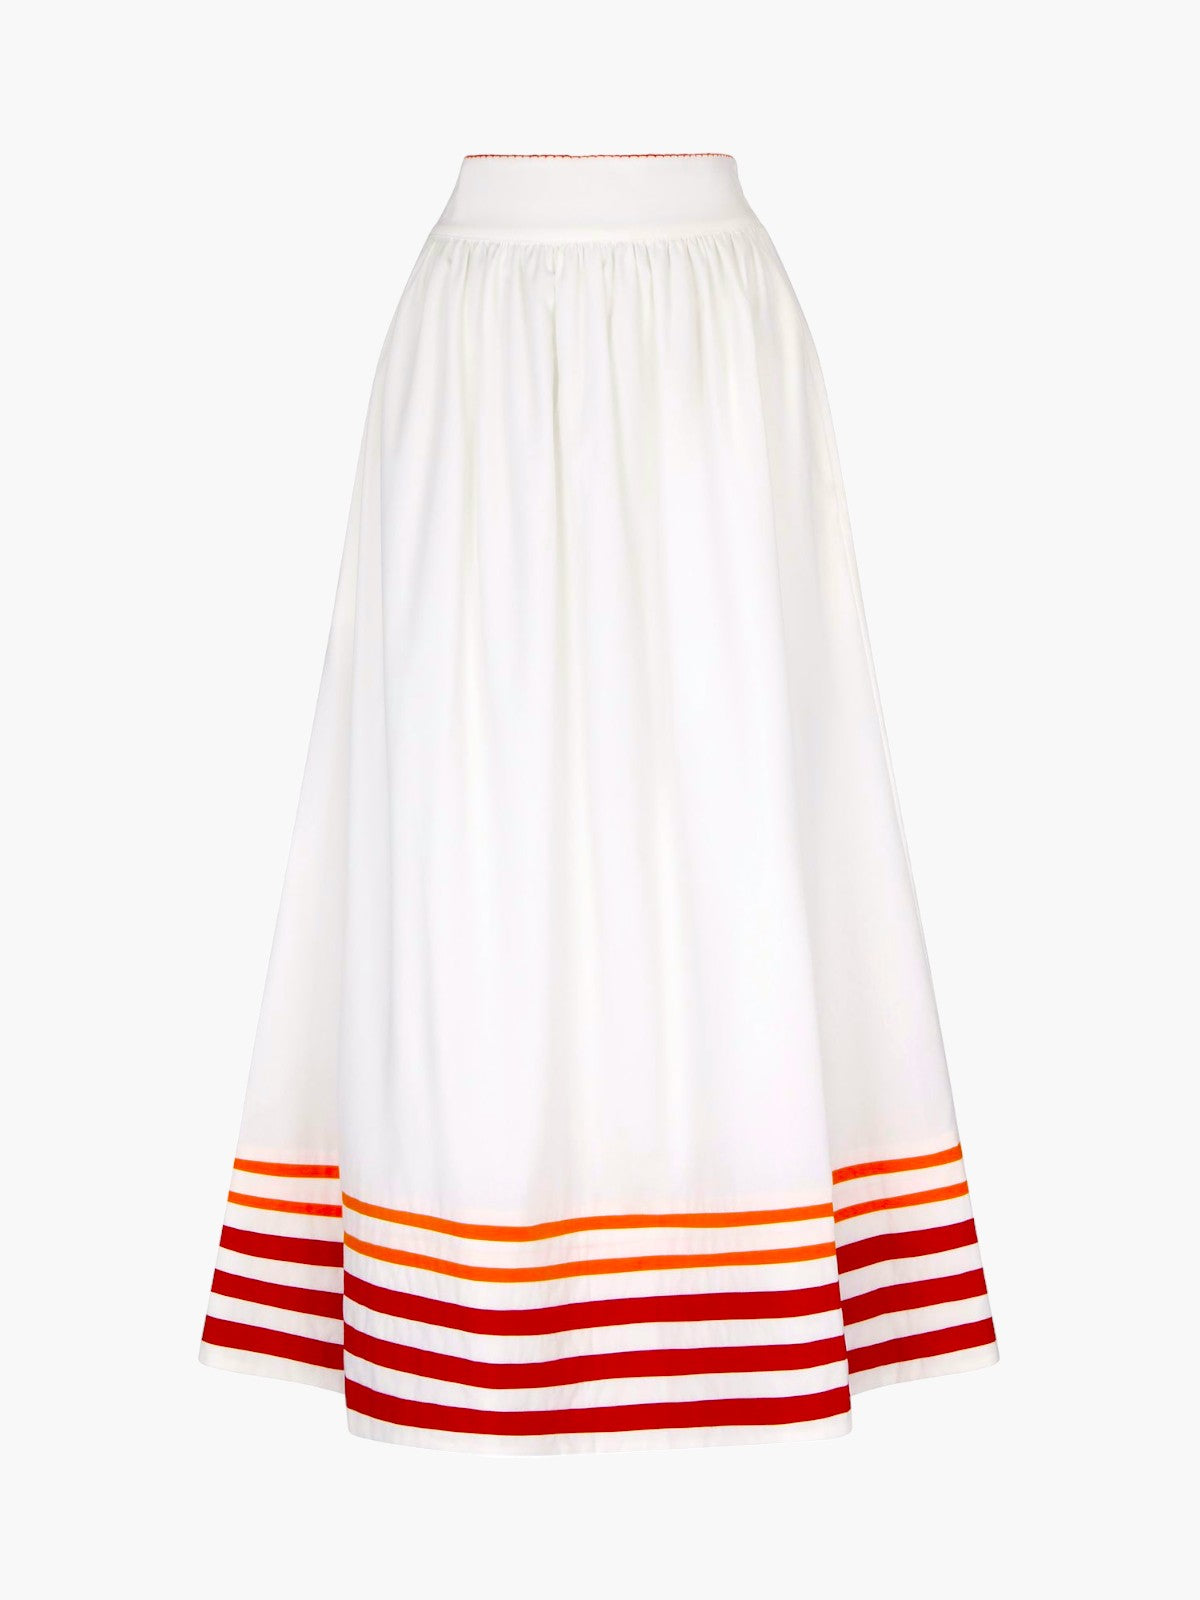 Encantada Skirt | Tangerine Encantada Skirt | Tangerine